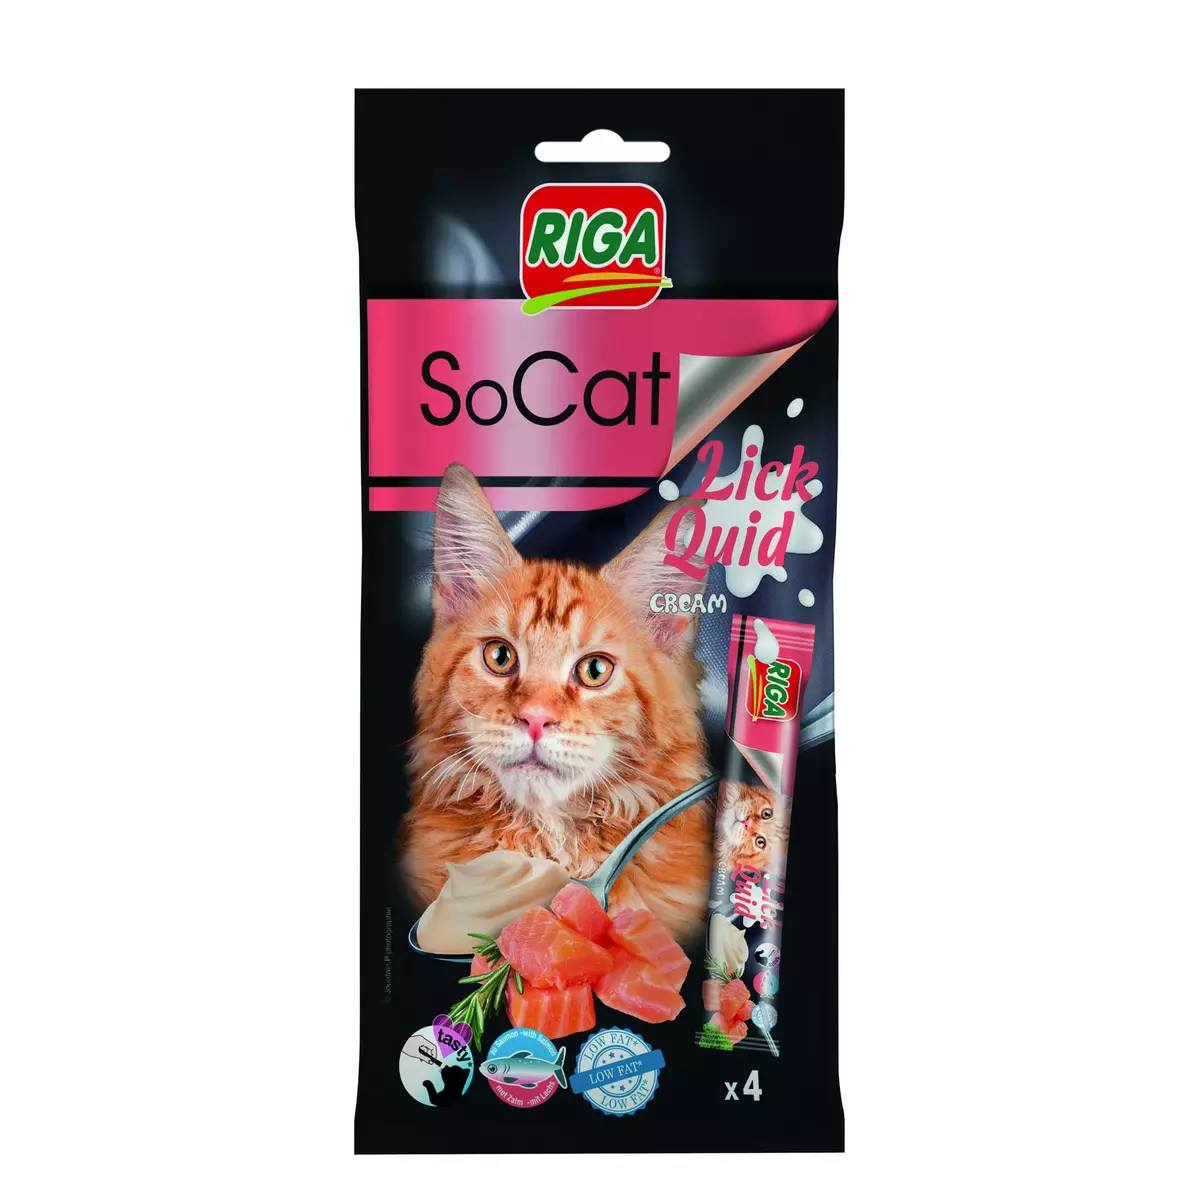 RIGA SoCat lick quid au saumon pour chat 4 pièces 56g